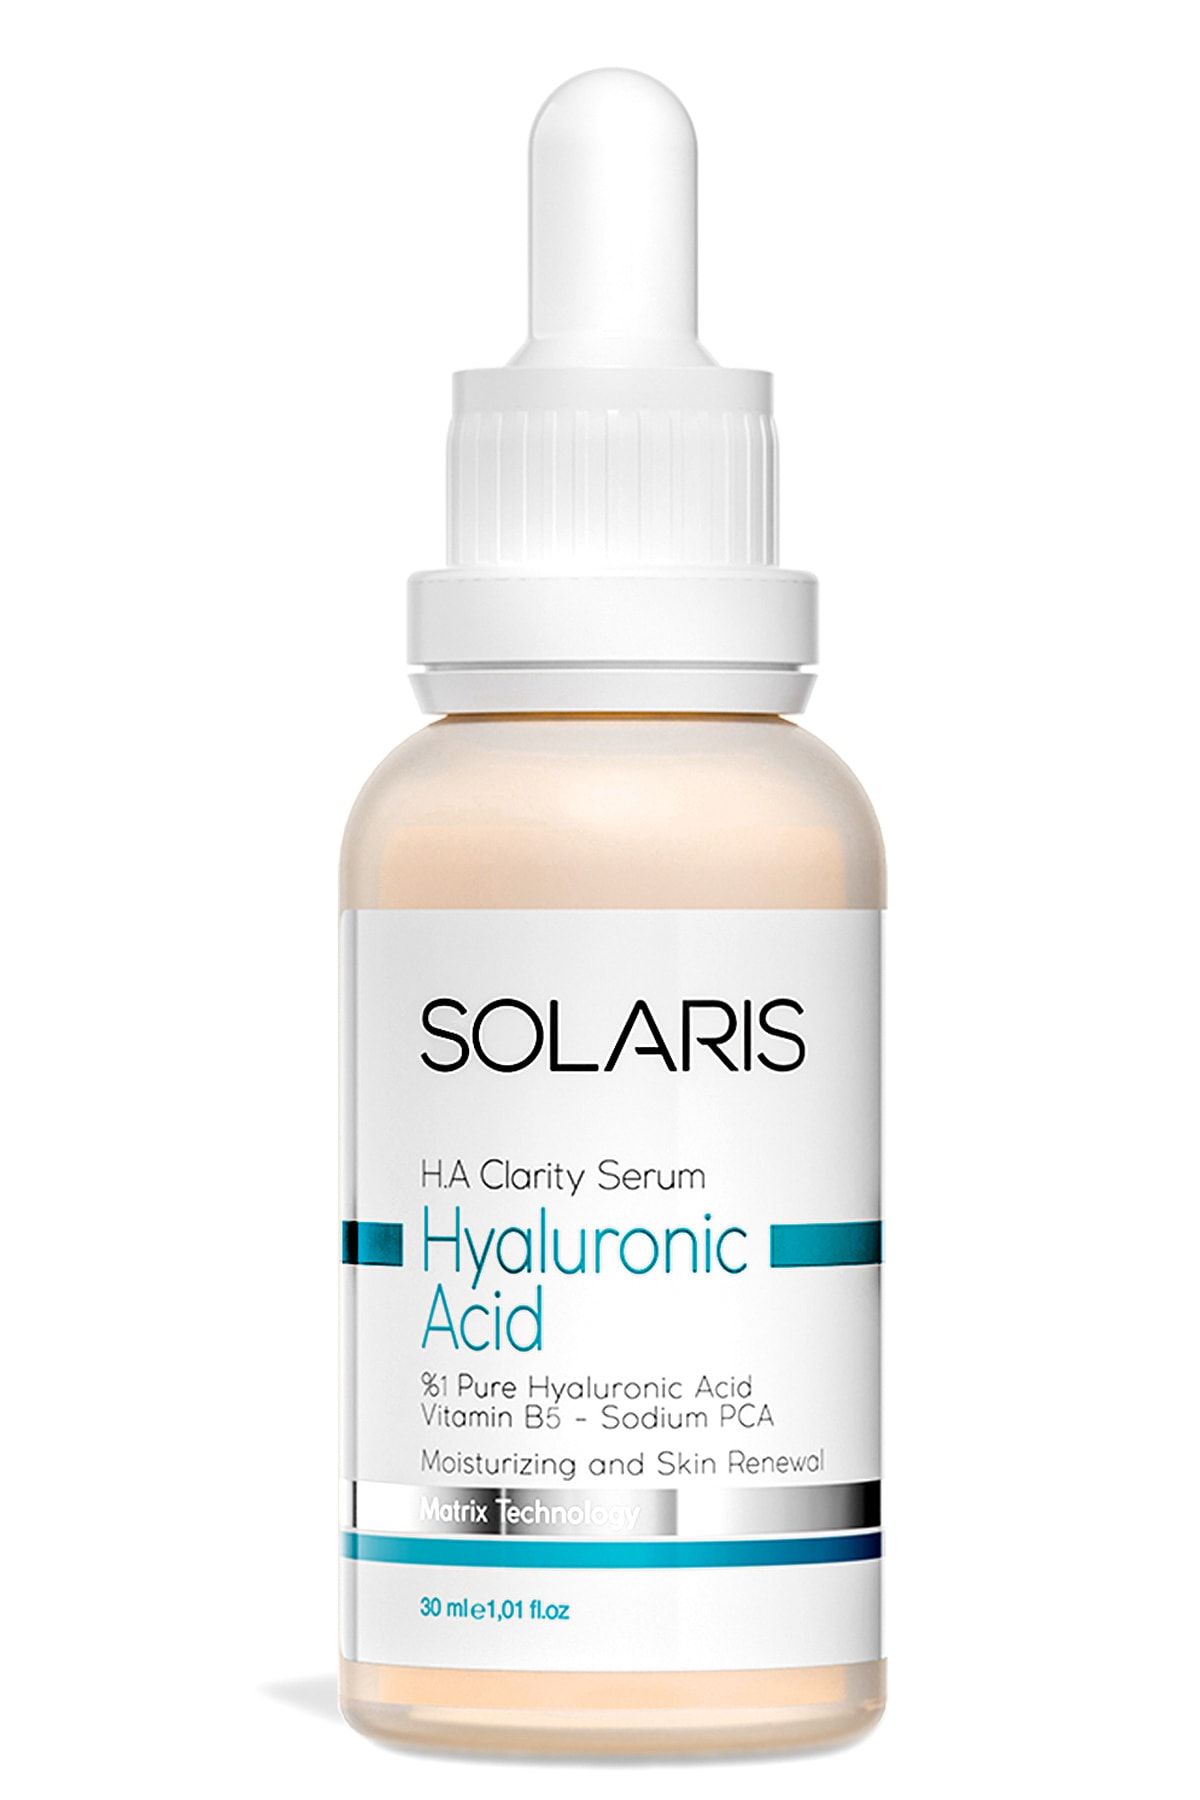 SOLARIS Tüm Ciltler Için Onarıcı Hyaluronik Asit Serum Nemlendirici 30 ml (HYALURONİC ACİD VE B5)